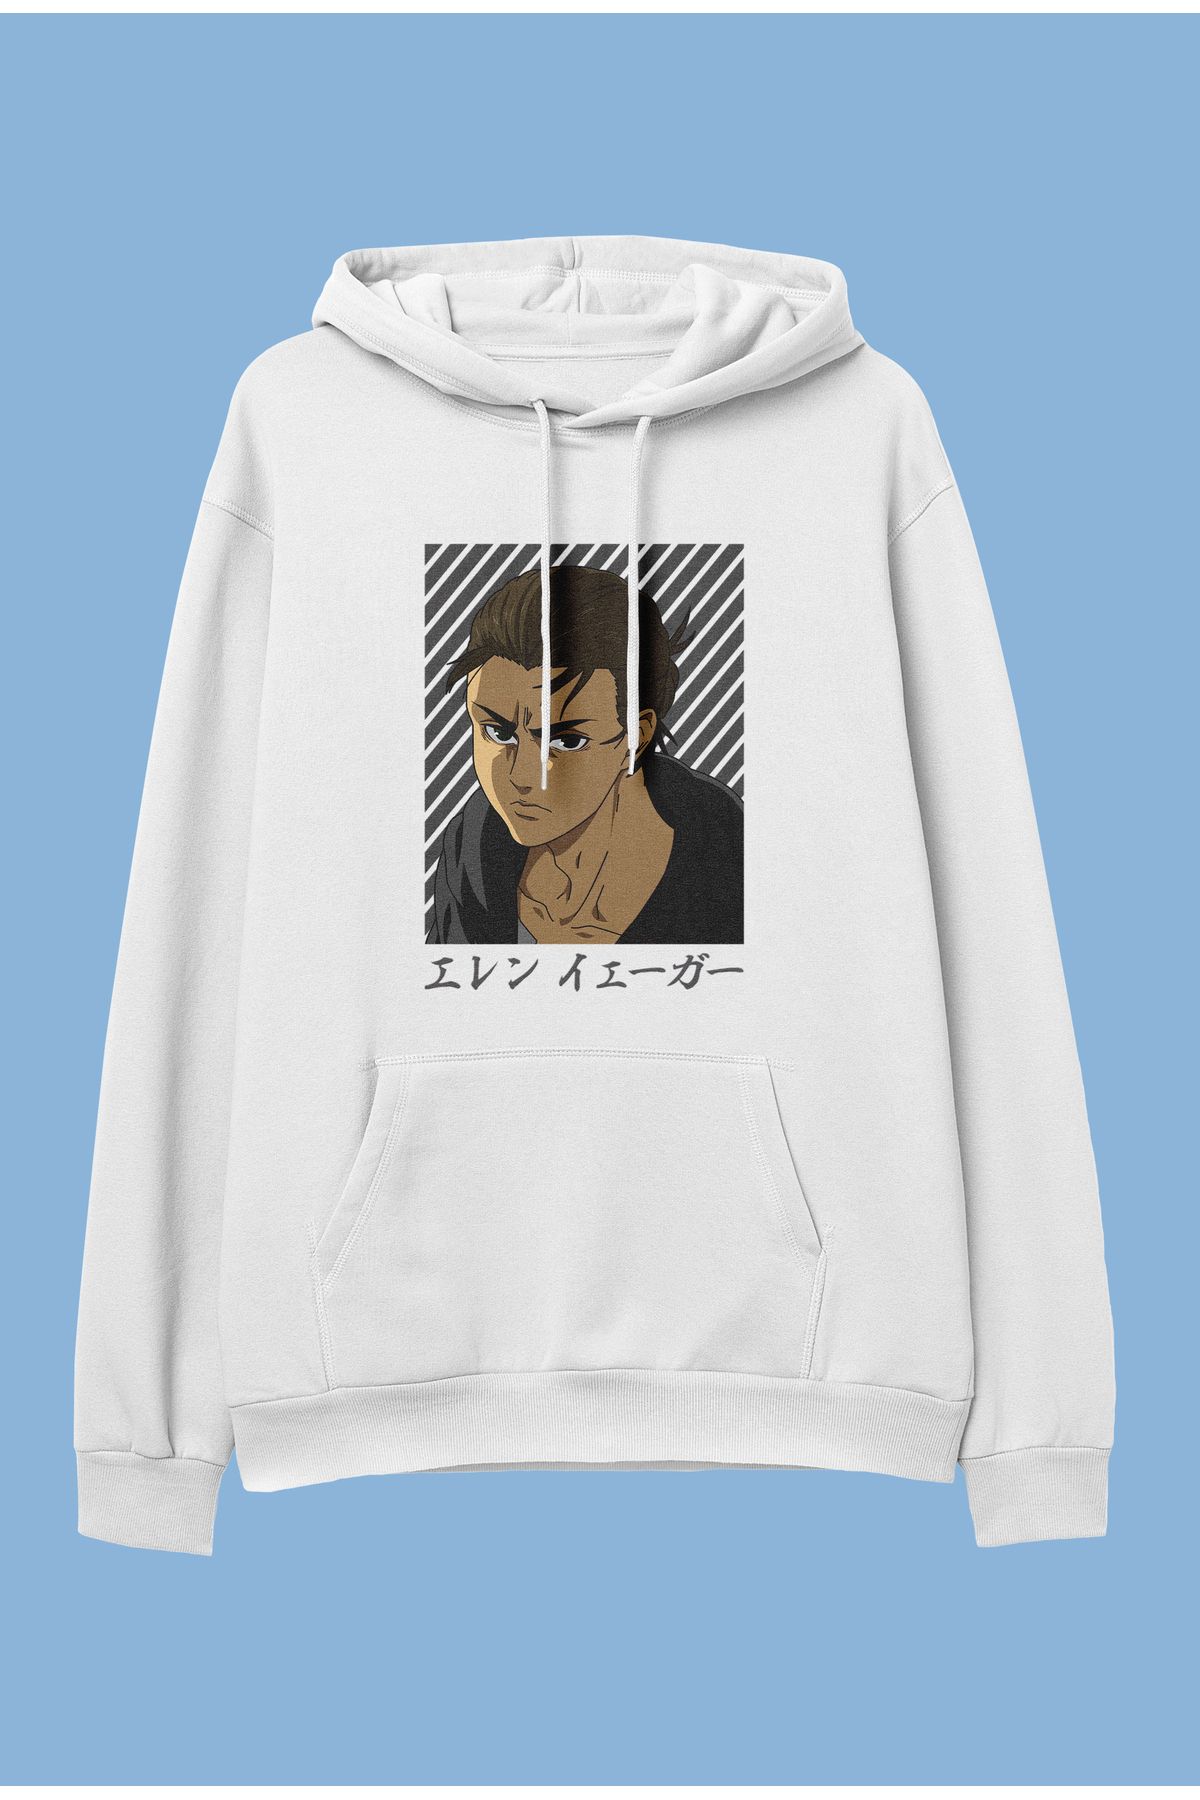 ZOKAWEAR Unisex Attack on Titan Eren Yeager anime karakter baskılı kapüşonlu sweatshirt hoodie